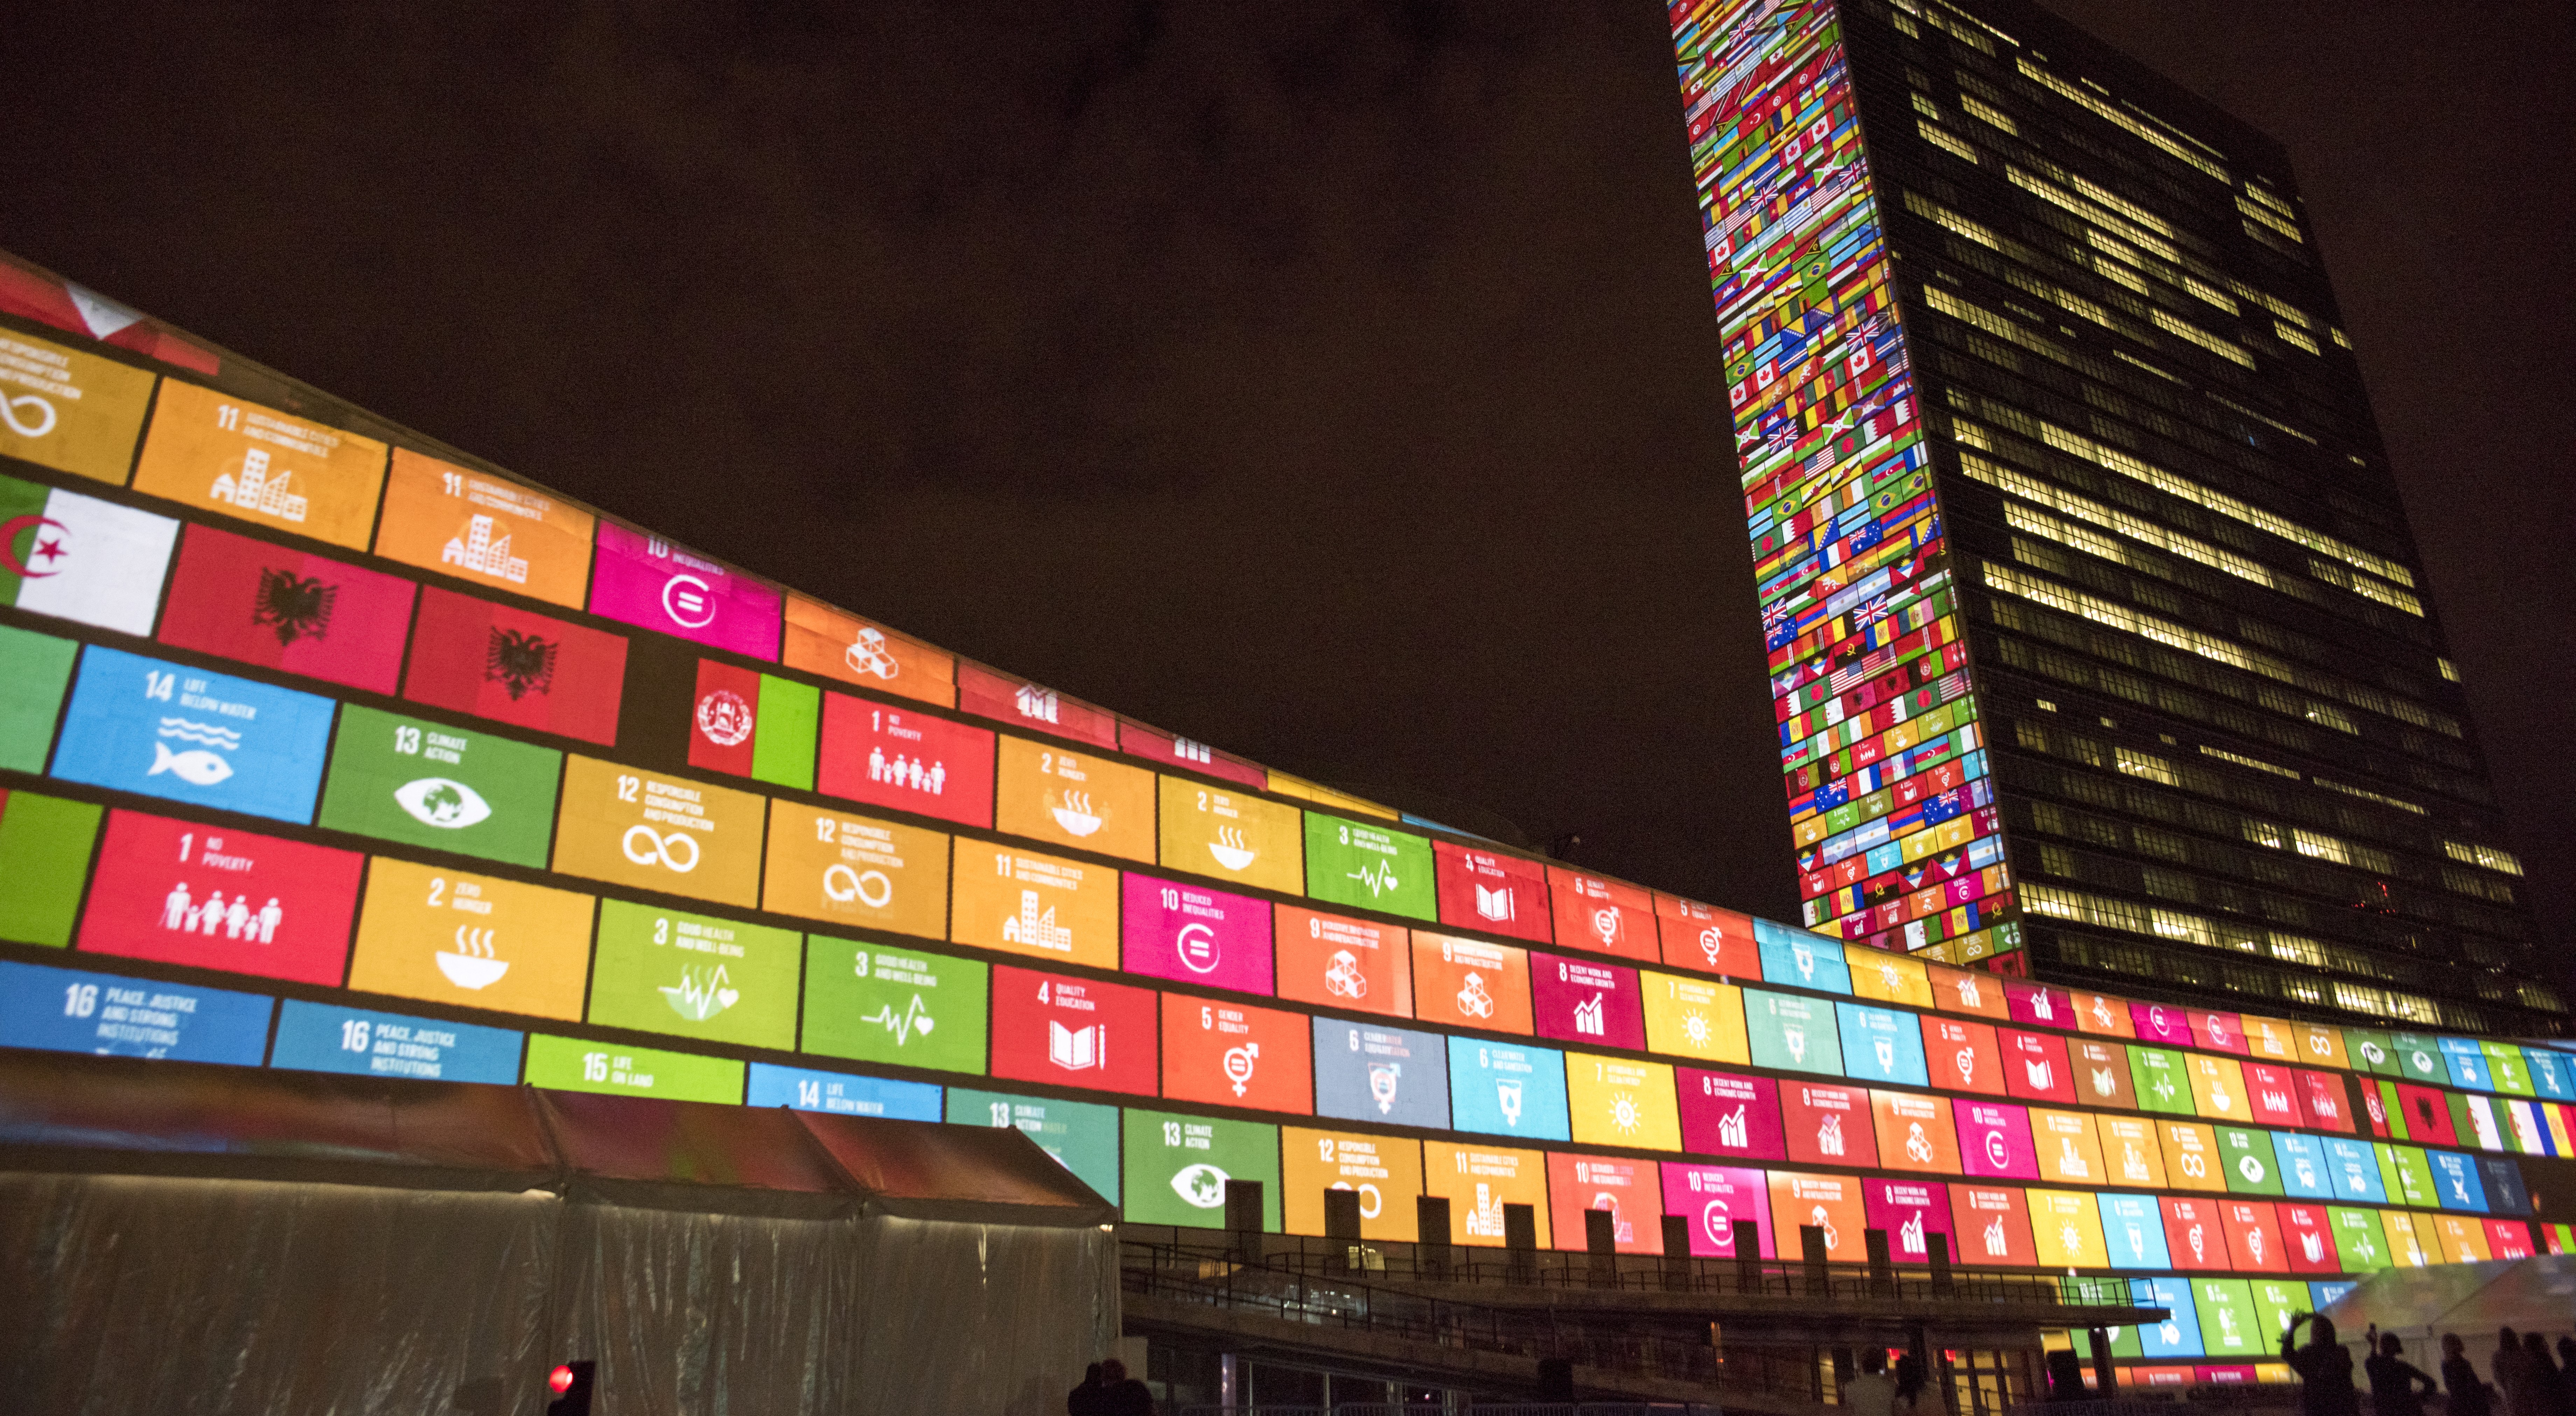 VN gebouw met SDG's